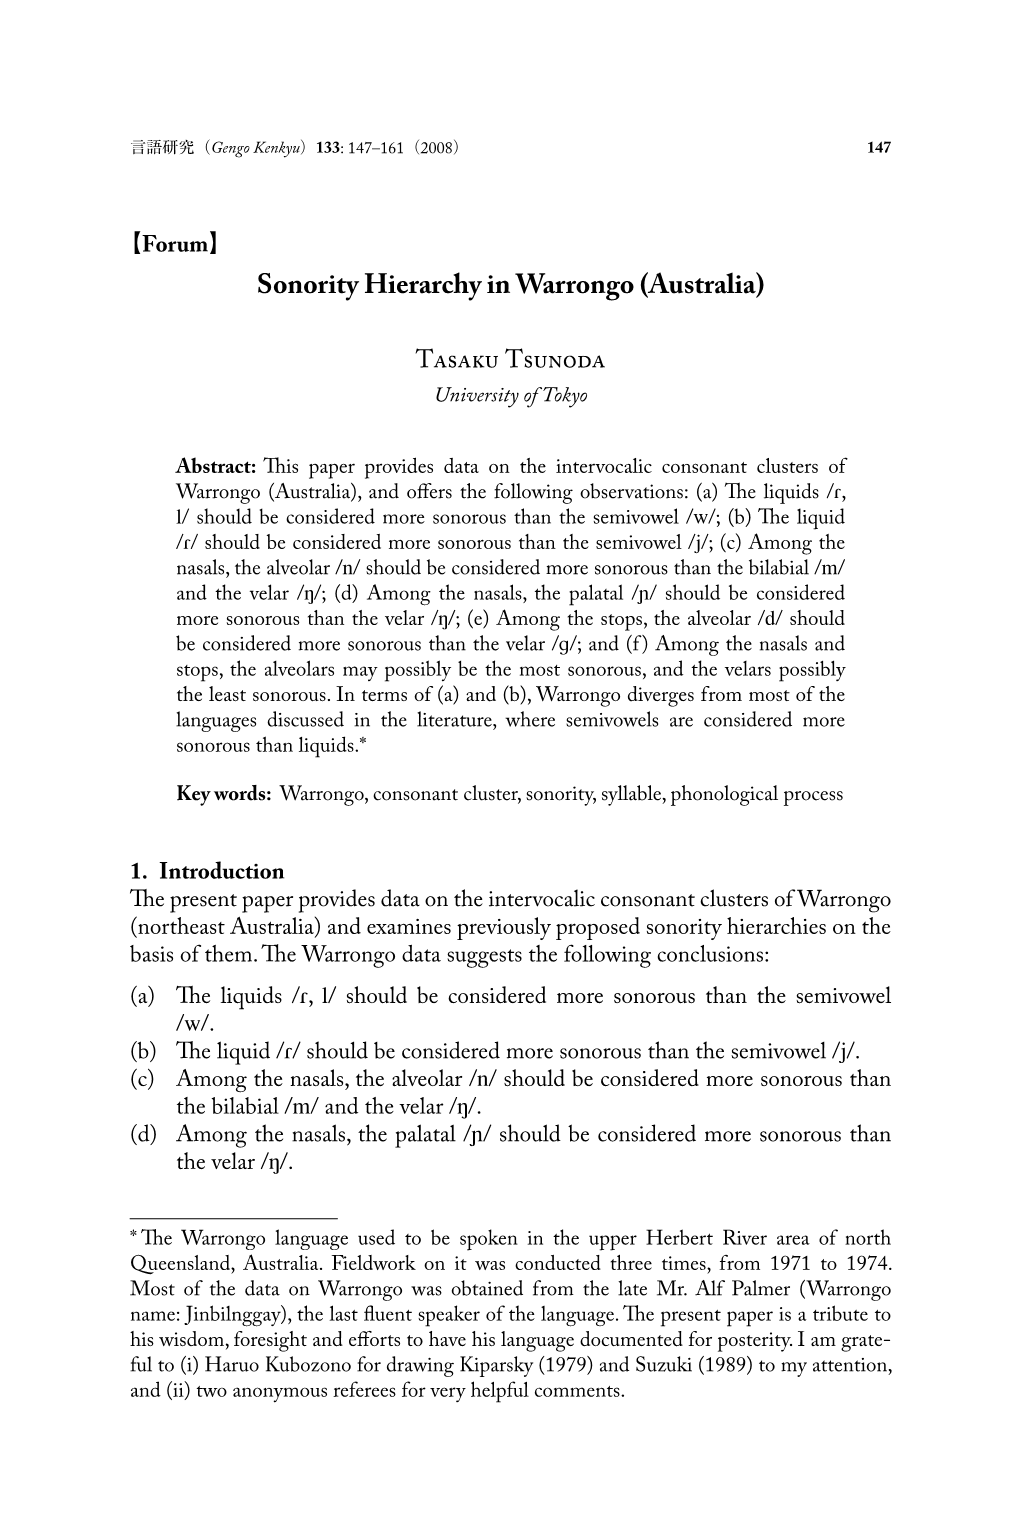 Sonority Hierarchy in Warrongo (Australia)